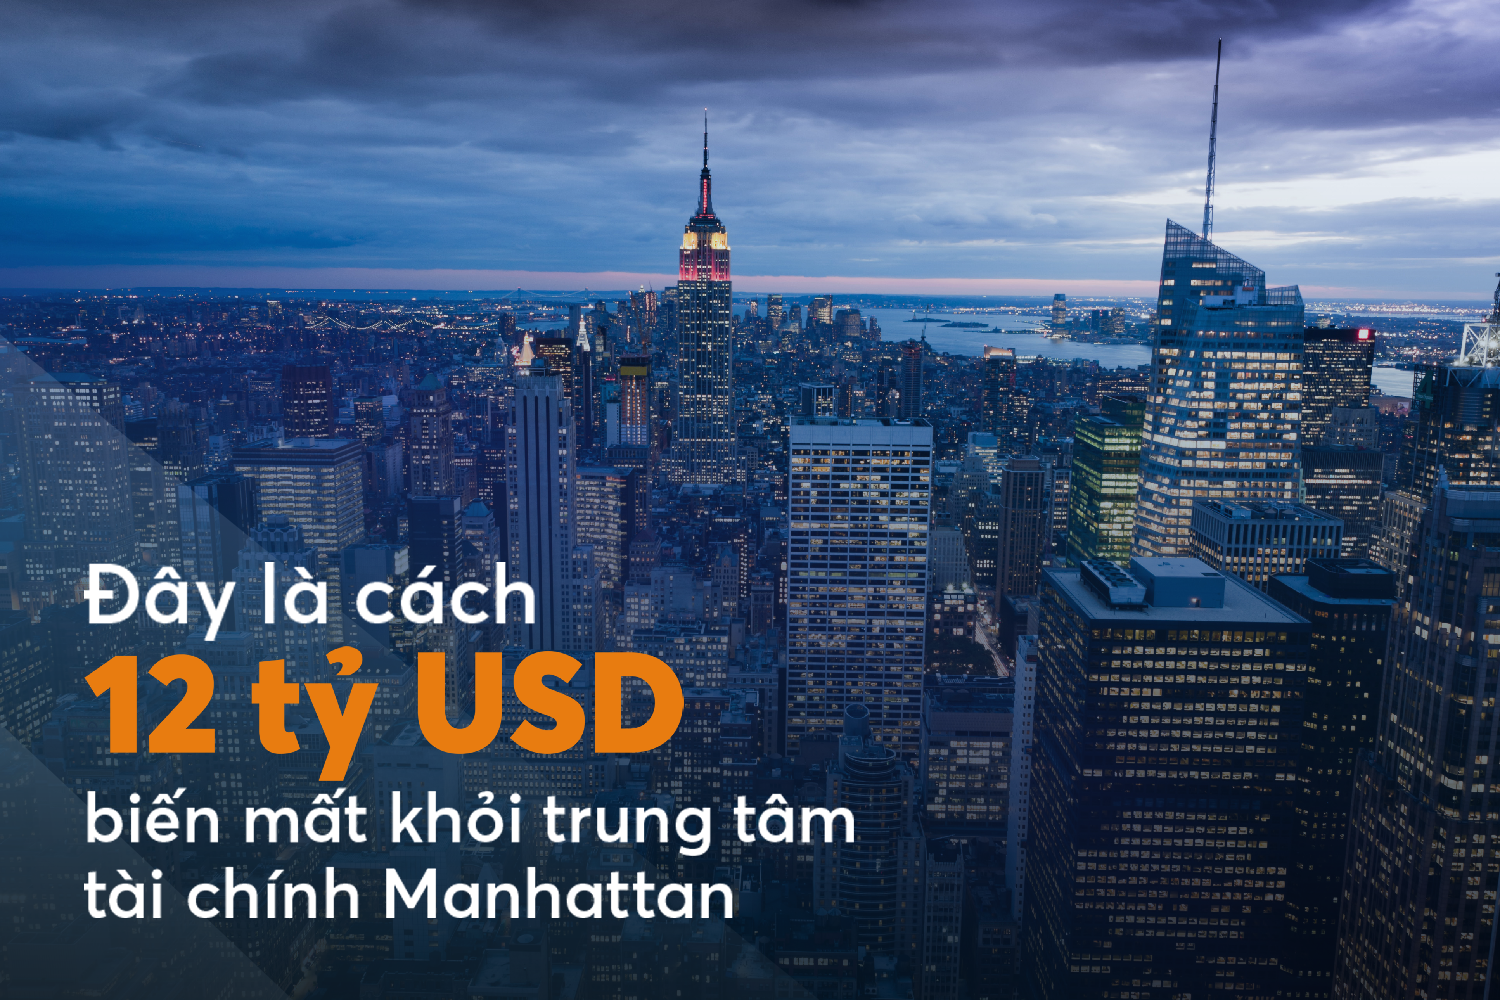 Tuần làm việc 3 ngày và cách 12 tỷ USD biến mất khỏi trung tâm tài chính Manhattan mỗi năm - Ảnh 1.